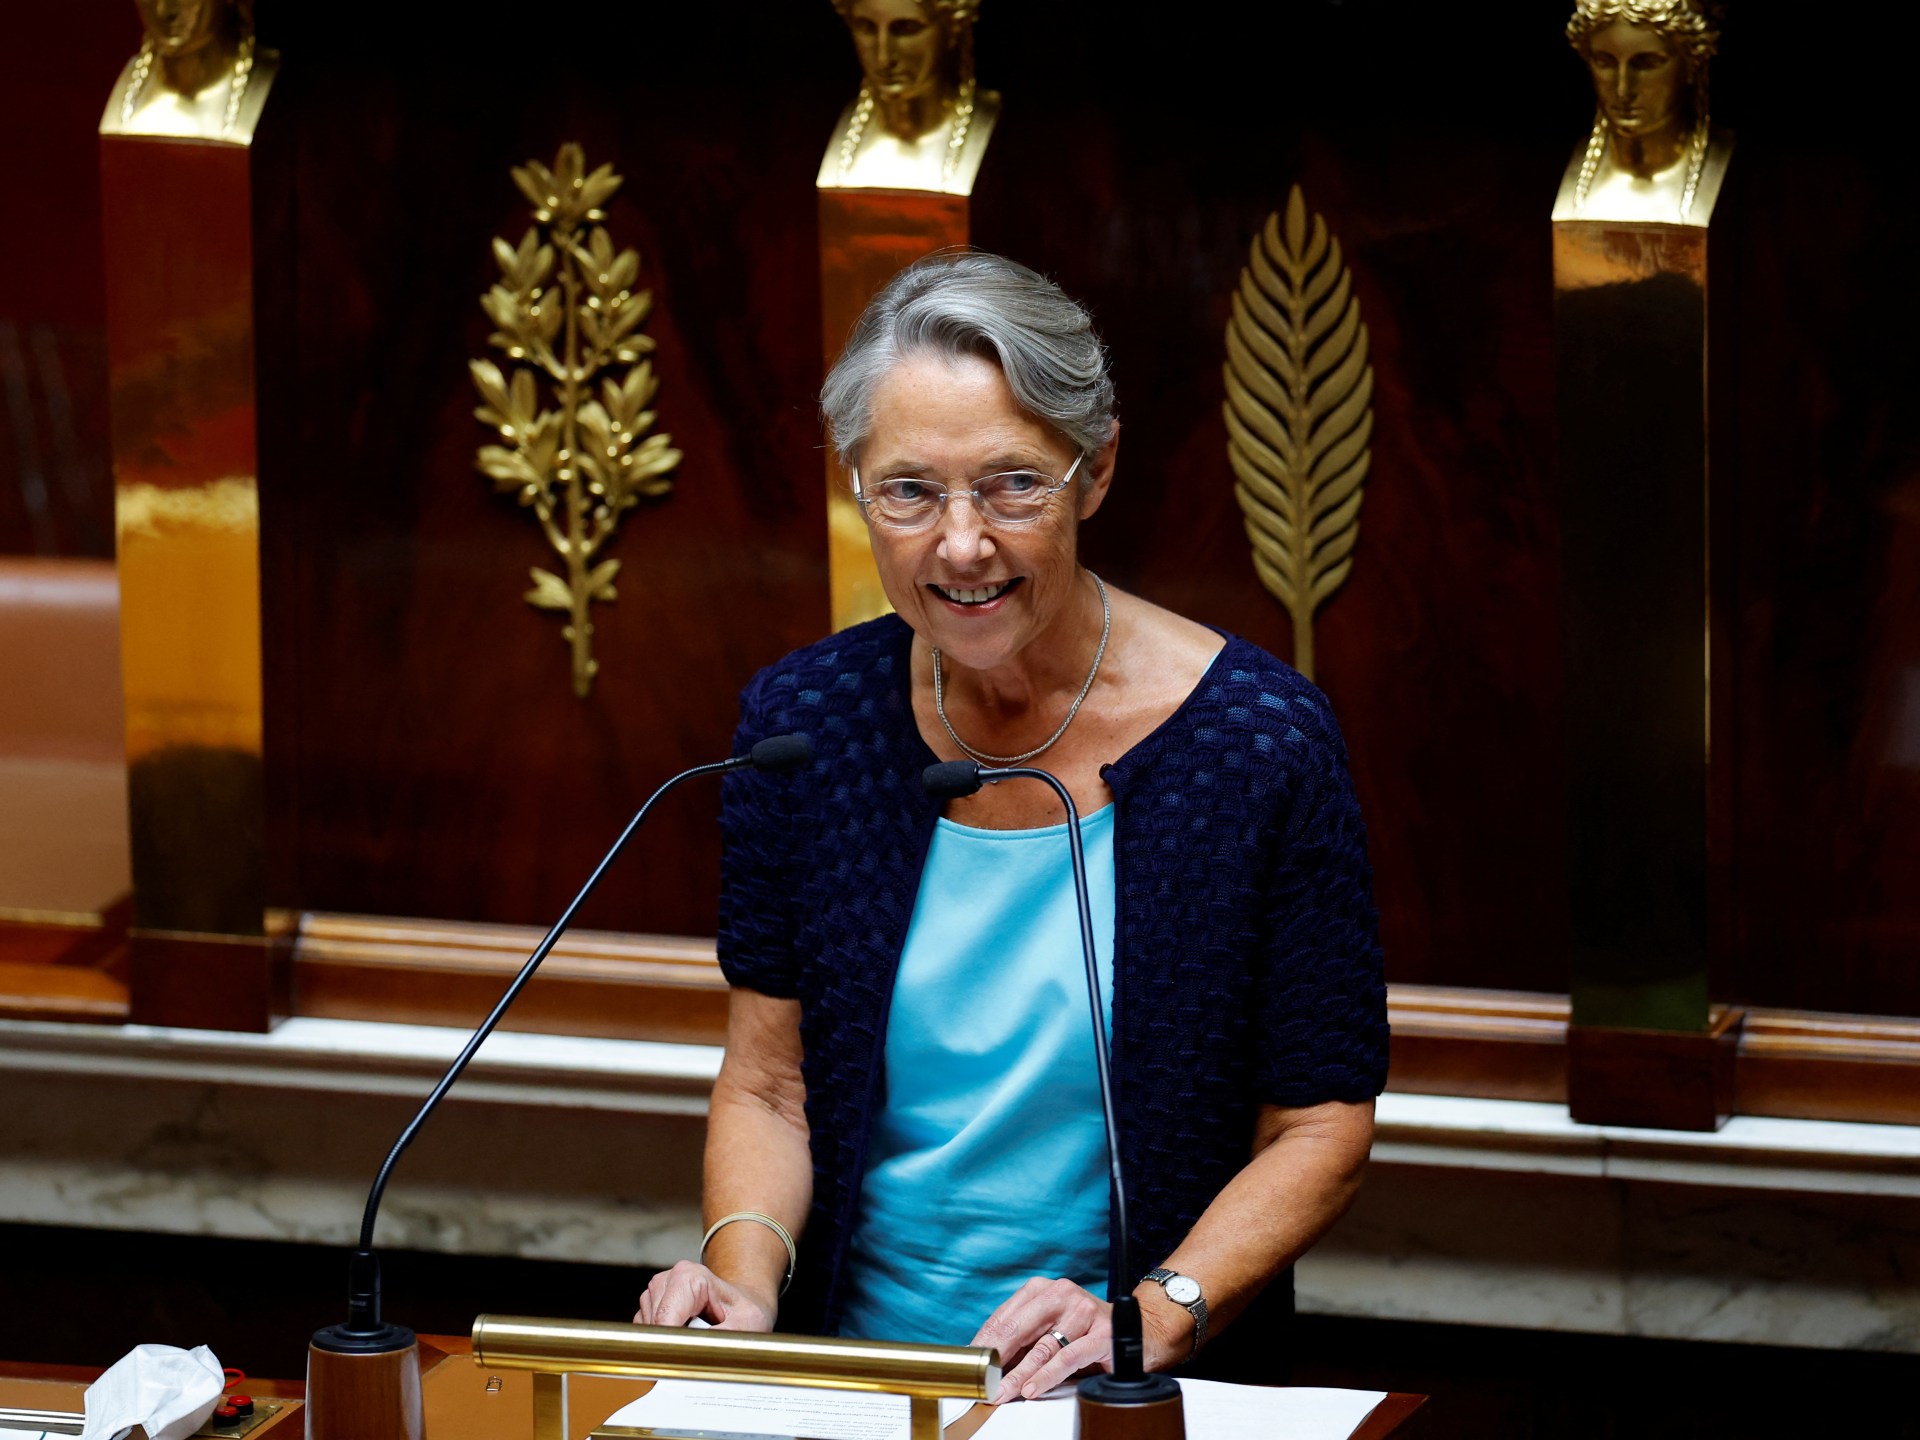 Le Premier ministre français survit à un vote de défiance au Parlement |  Nouvelles politiques